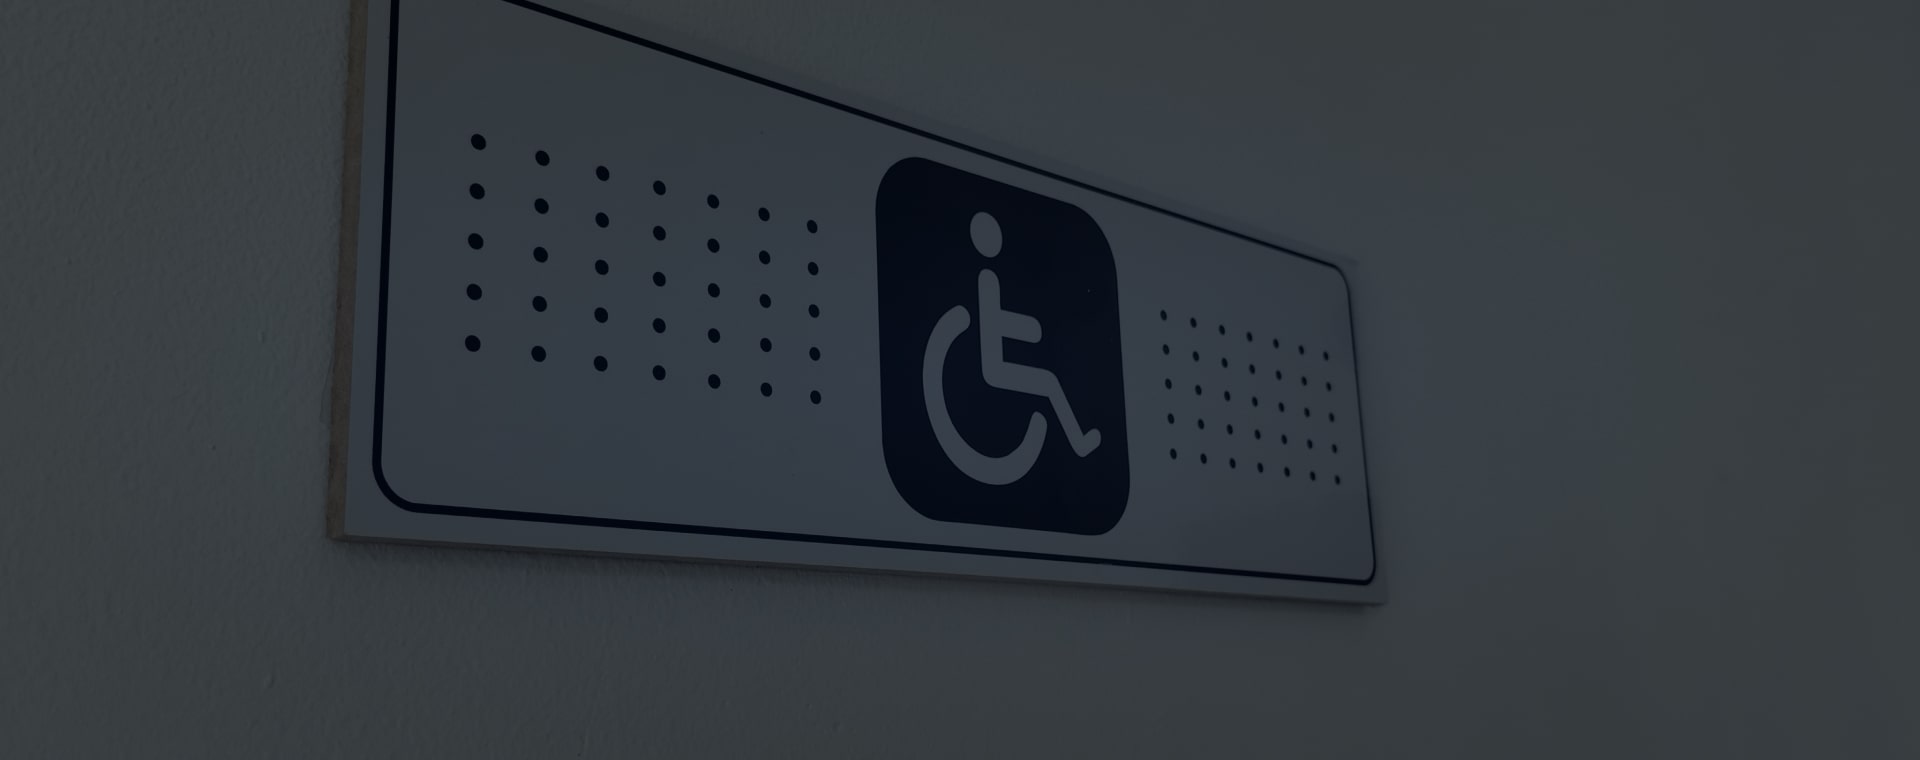 Disabled Refuge | Disabled Refuge Systems